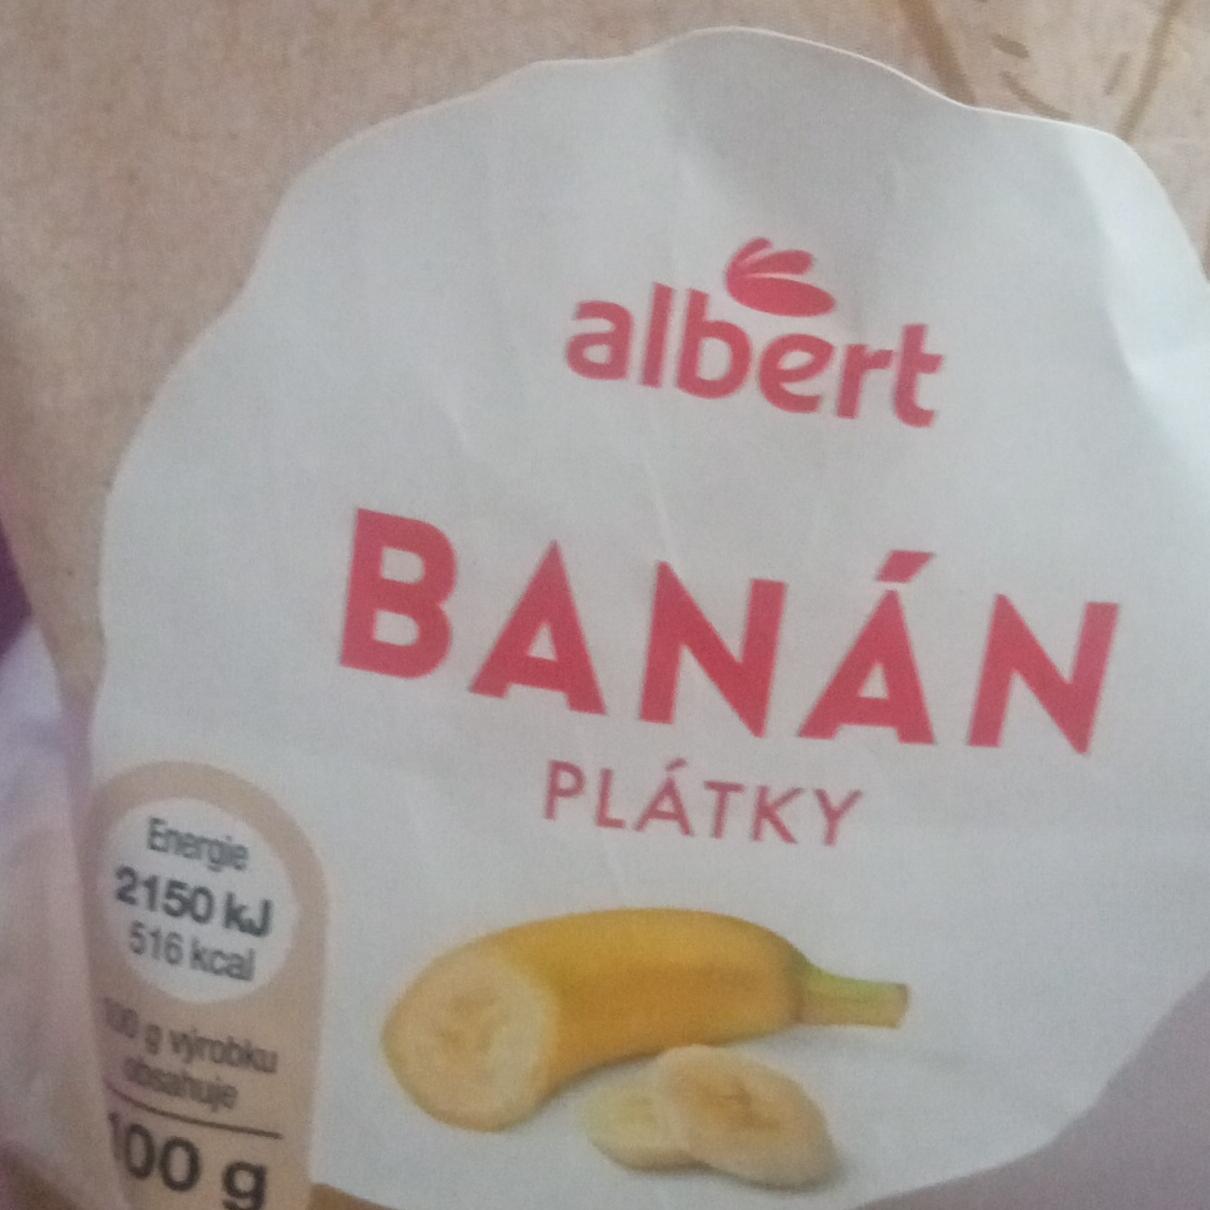 Fotografie - Banán plátky Albert